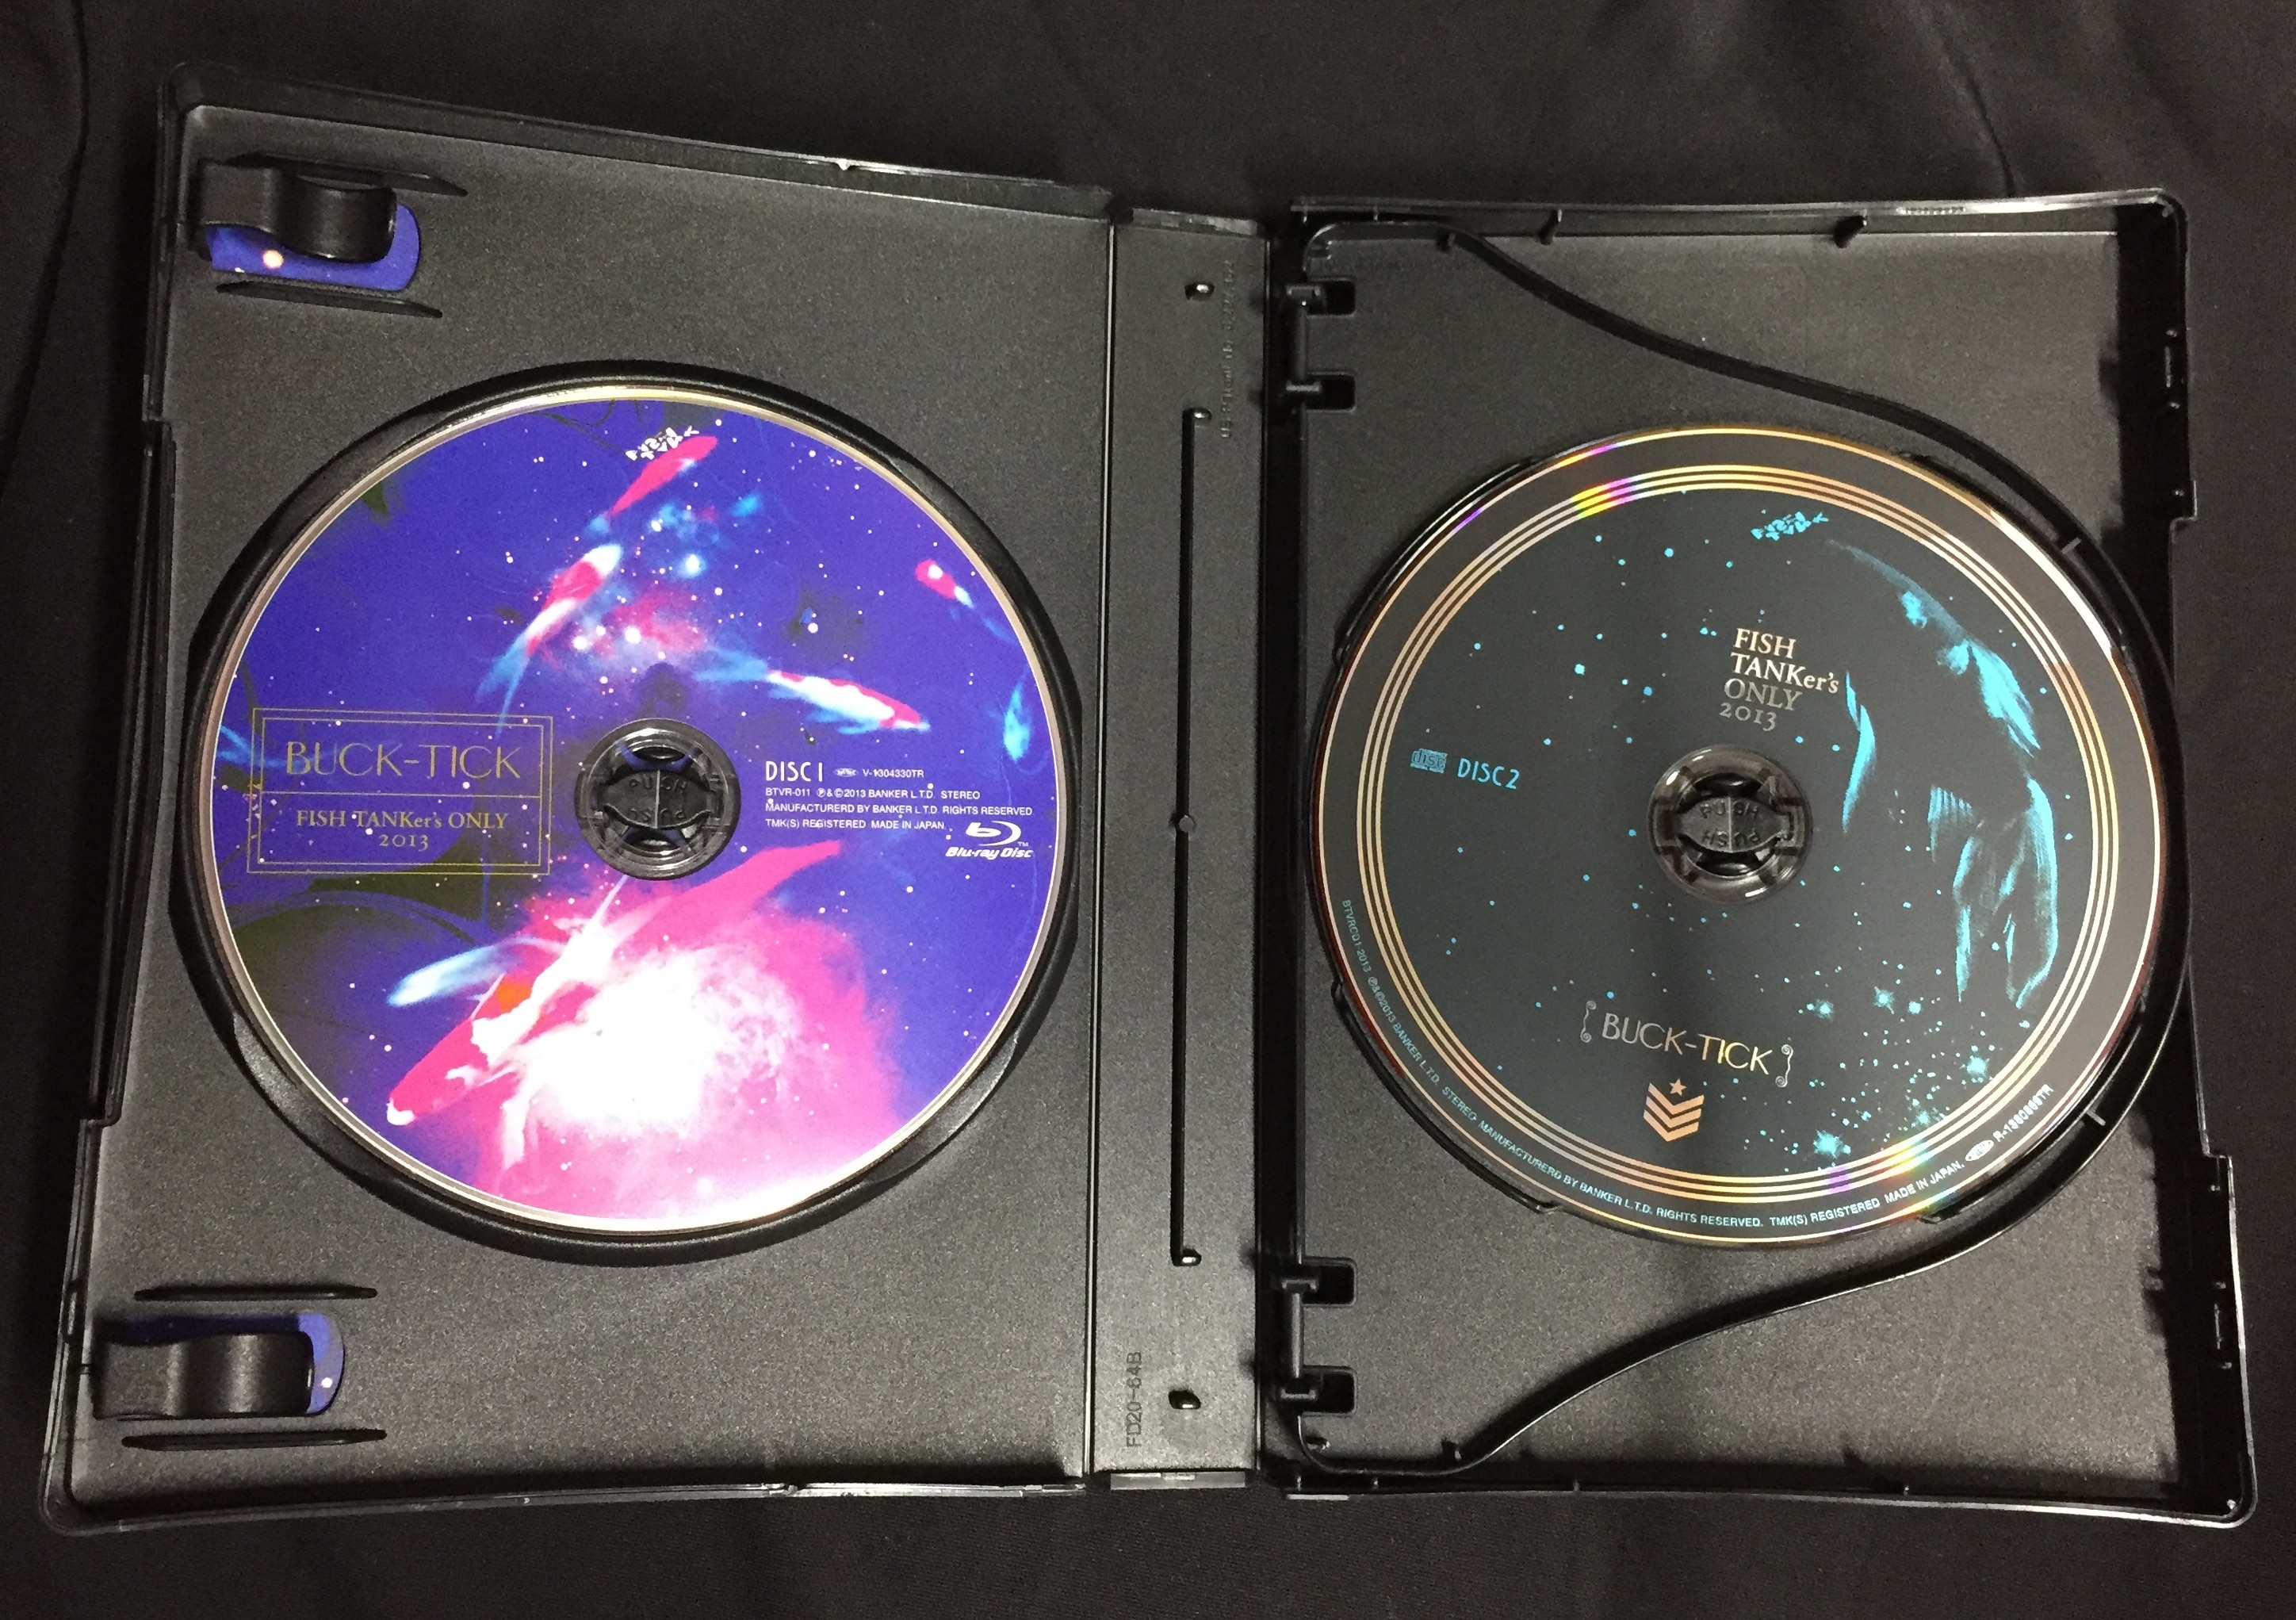 BUCK-TICK/FISH 2013+2014/Blu-ray+CD予約限定版